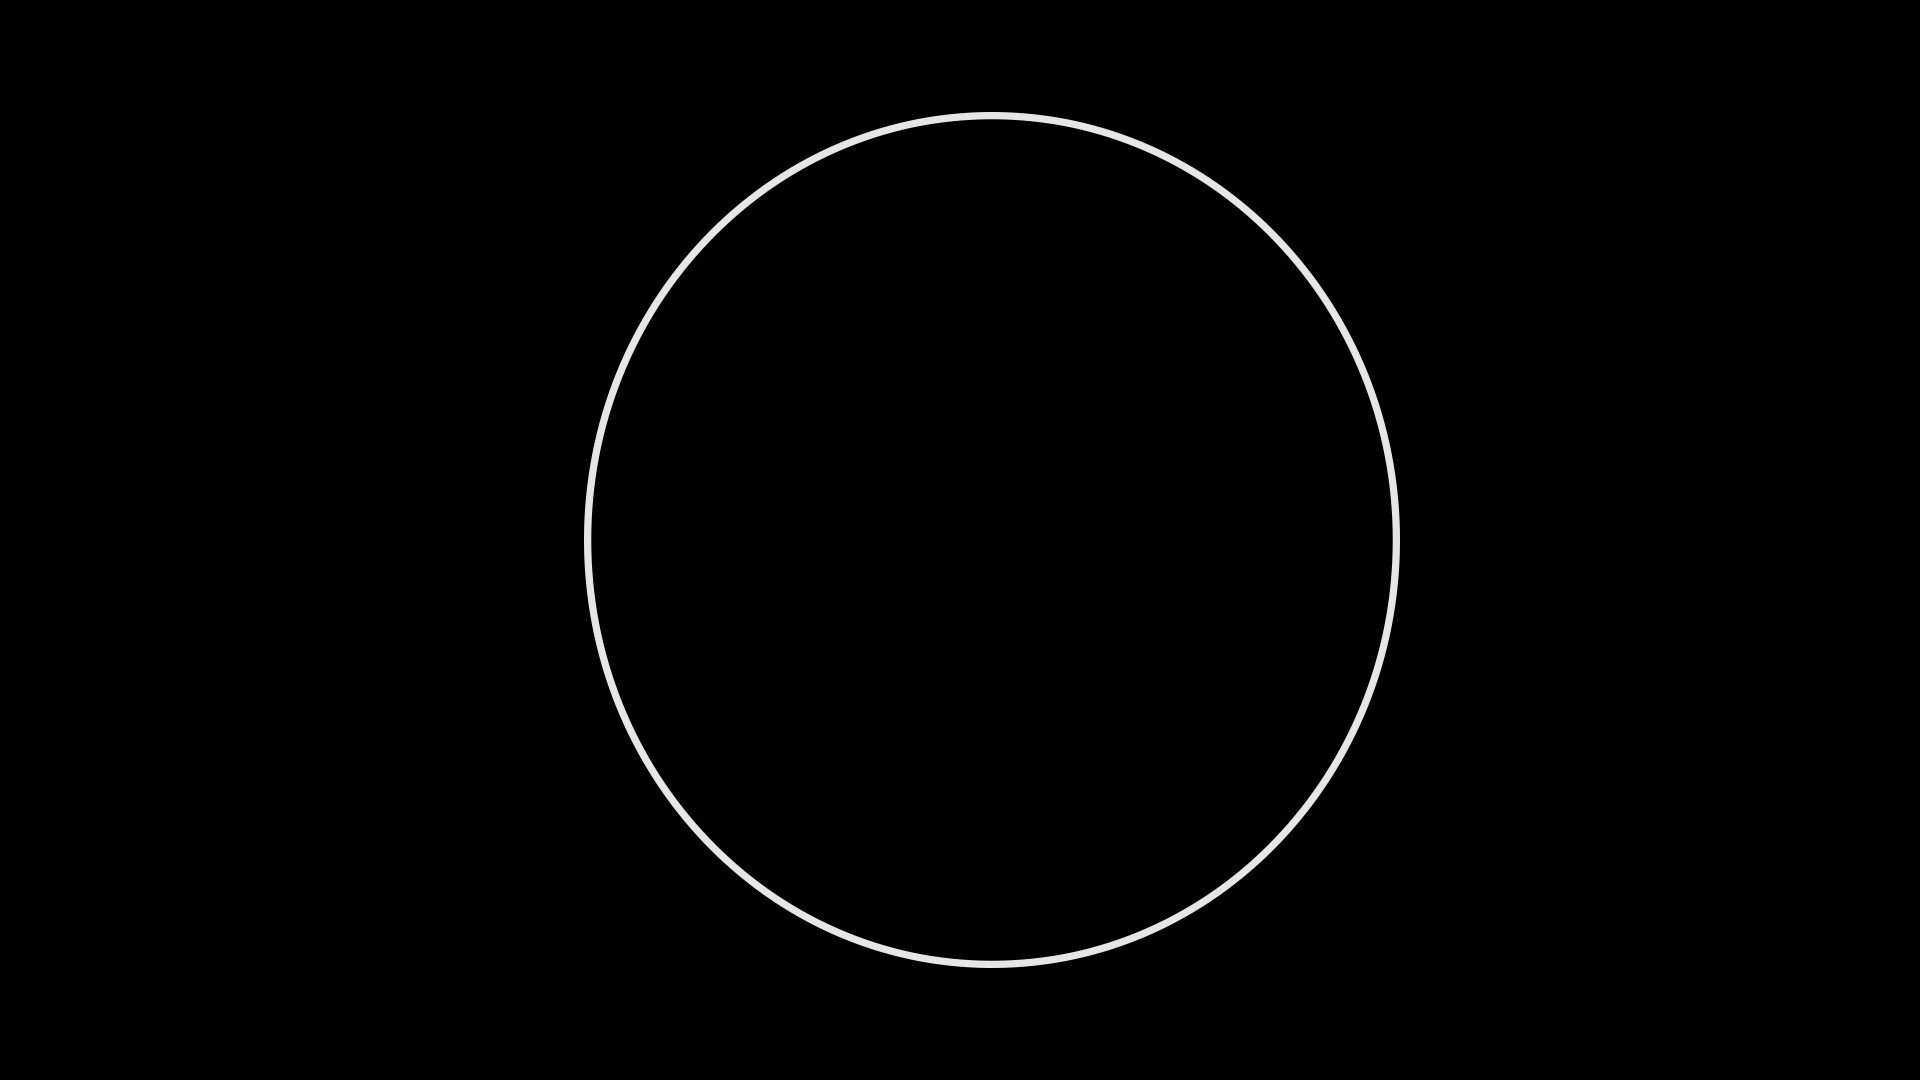 Белый круг на черном фоне